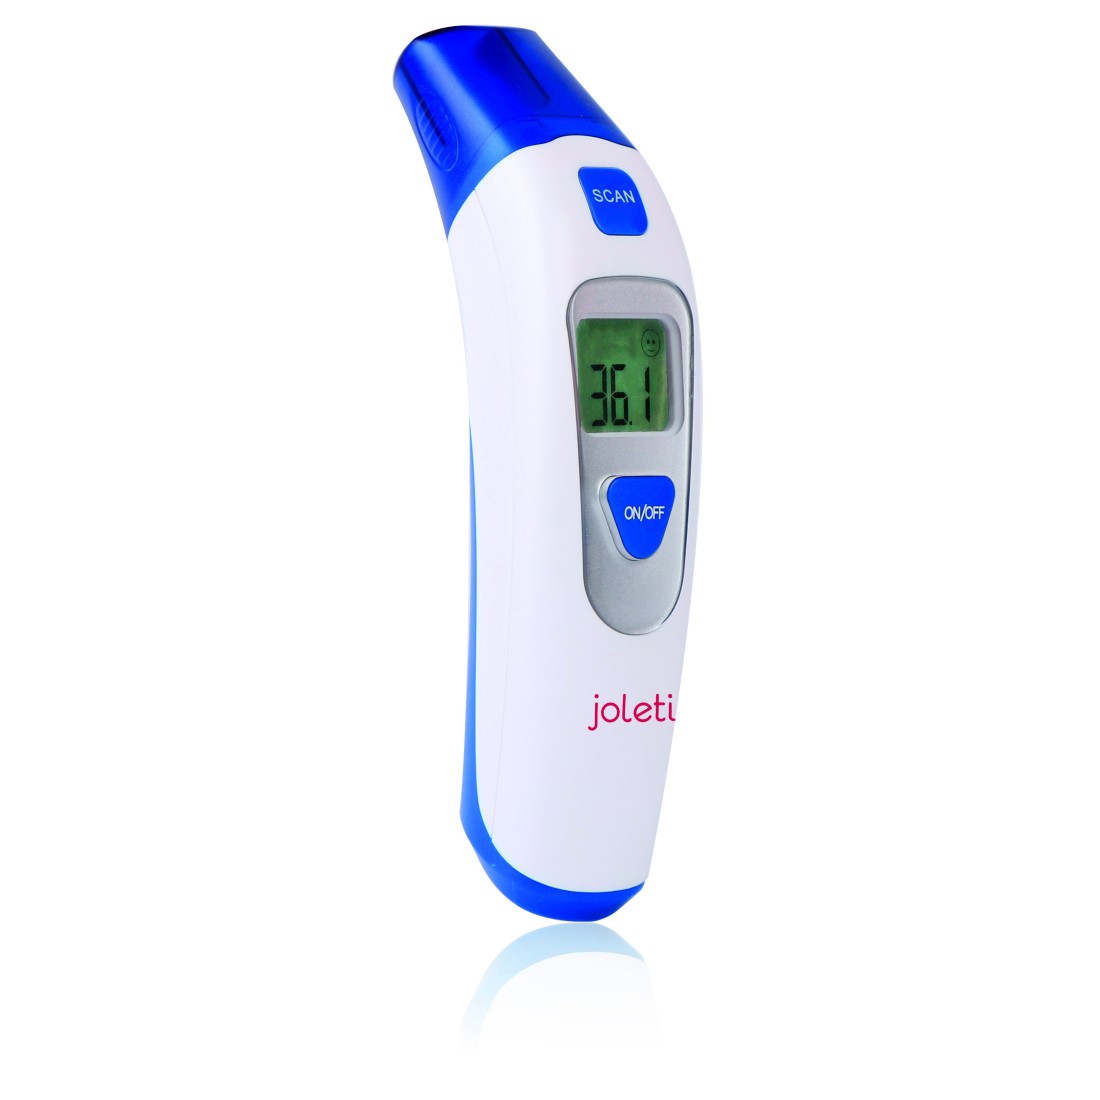 Thermomètre médical frontal sans contact conforme aux normes médicales